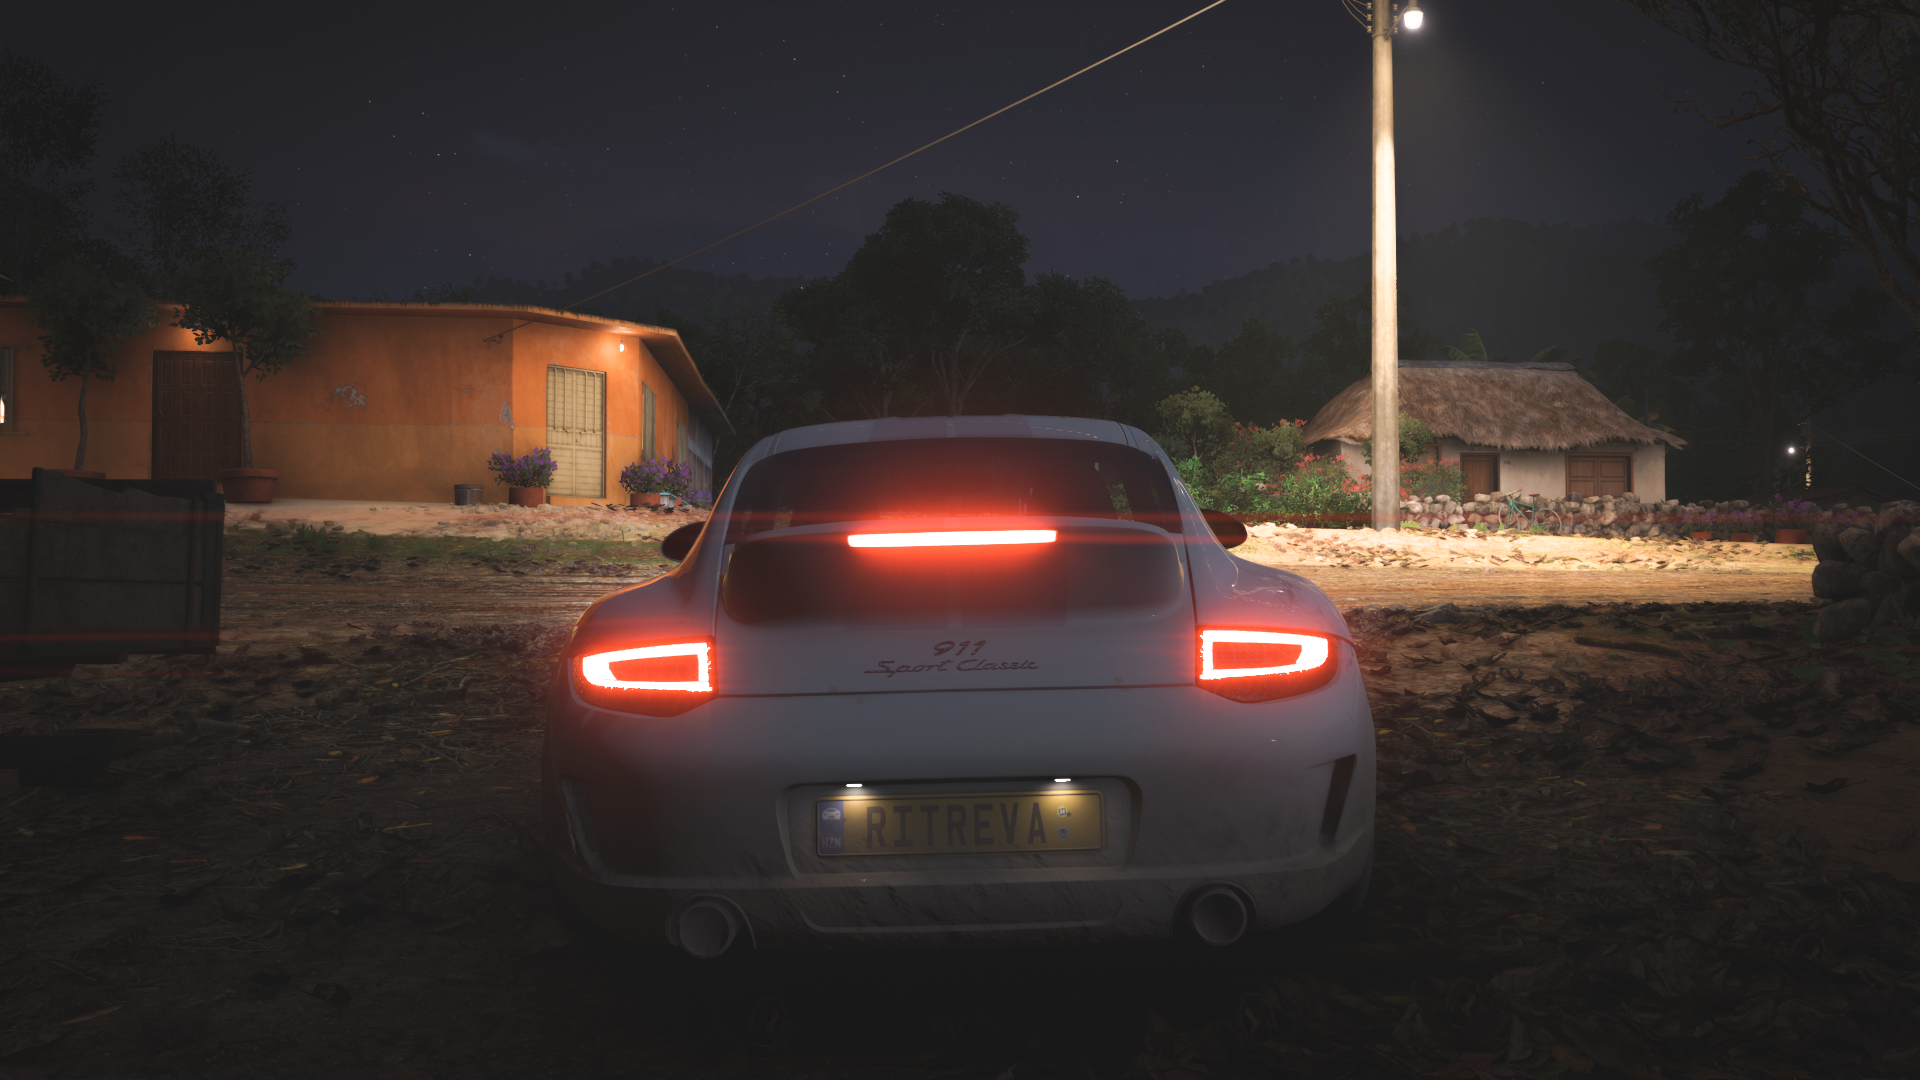 General 1920x1080 Forza Horizon 5 Porsche video game art car